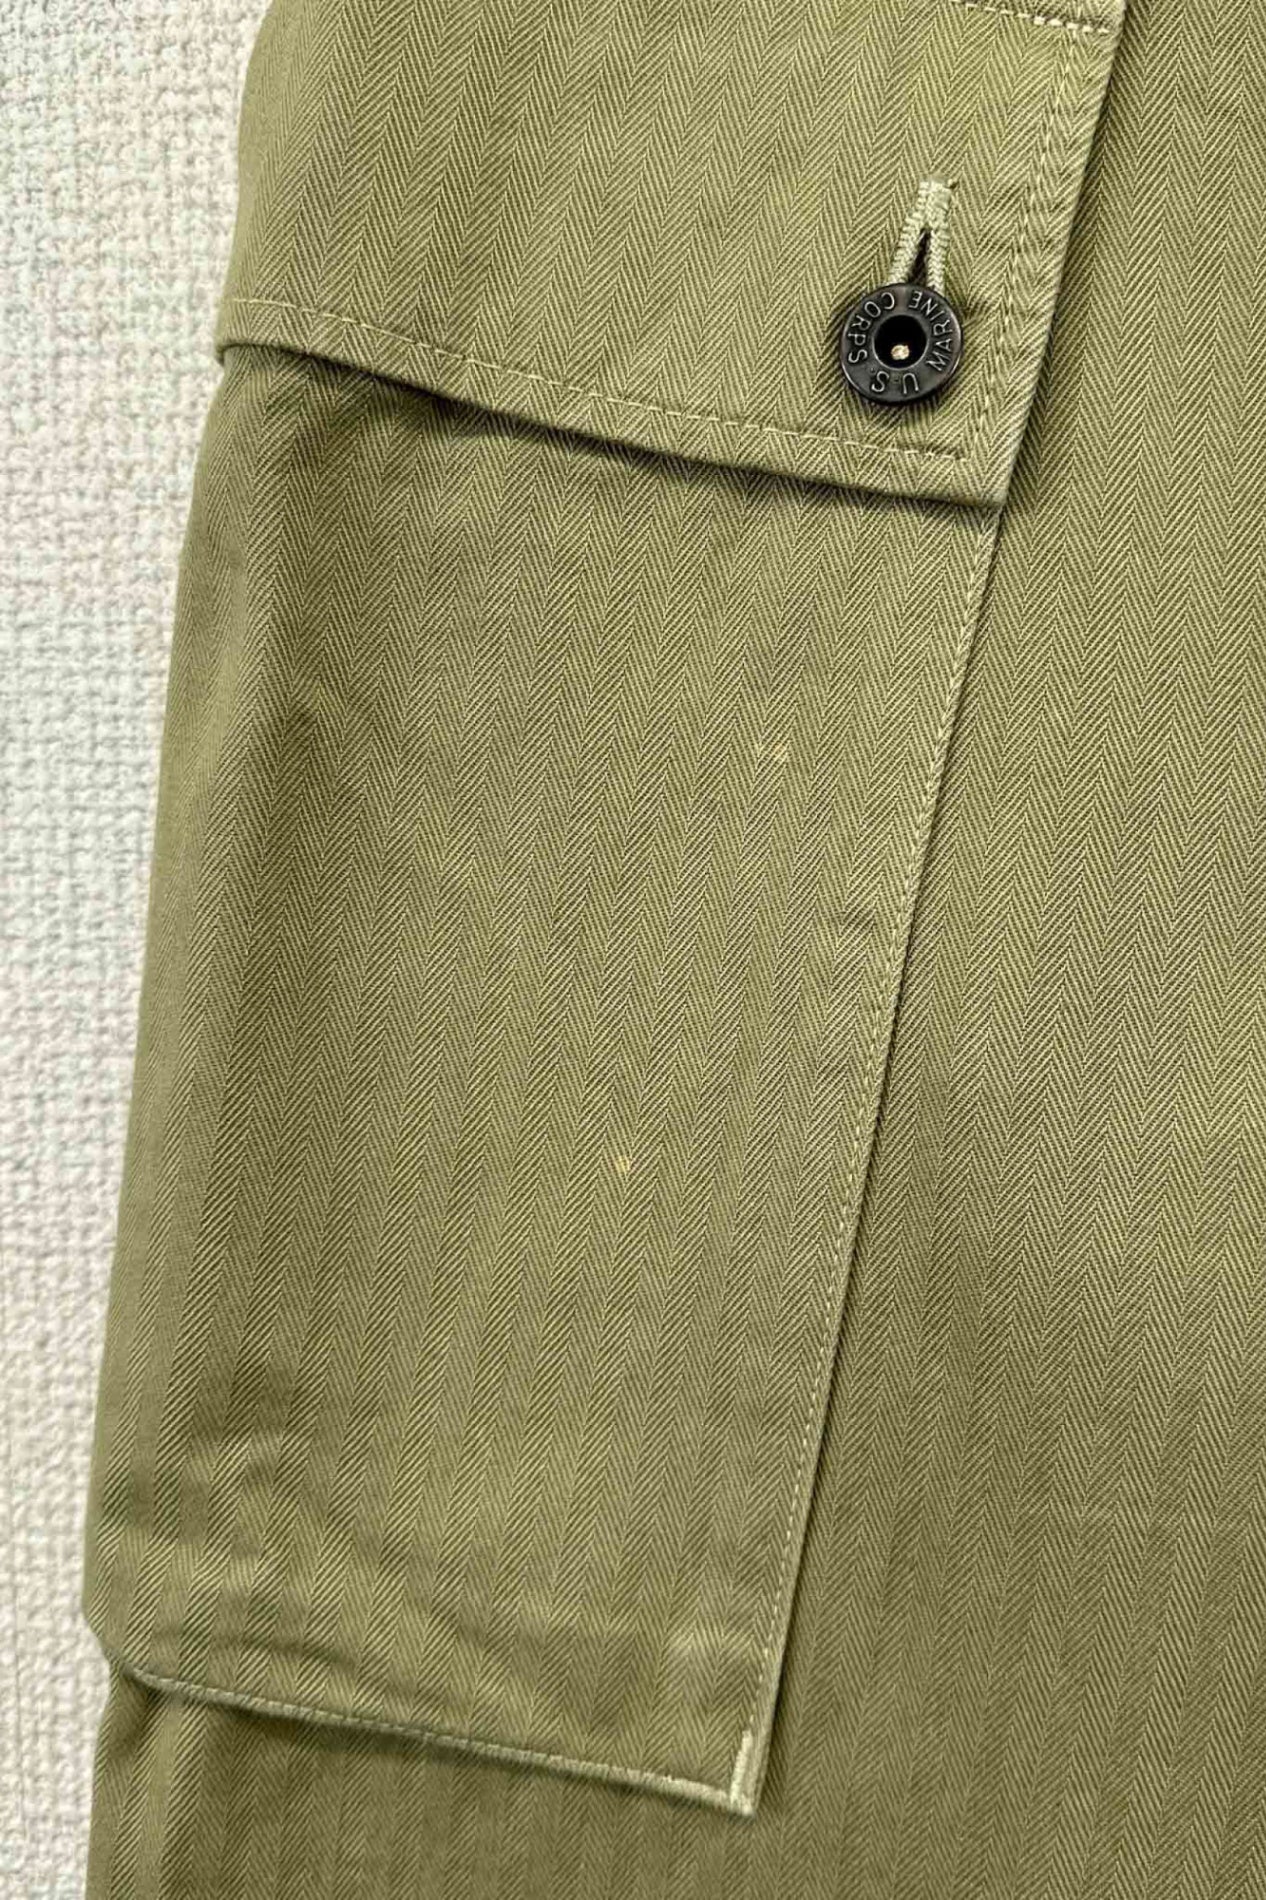 MARKAWARE green cotton pants